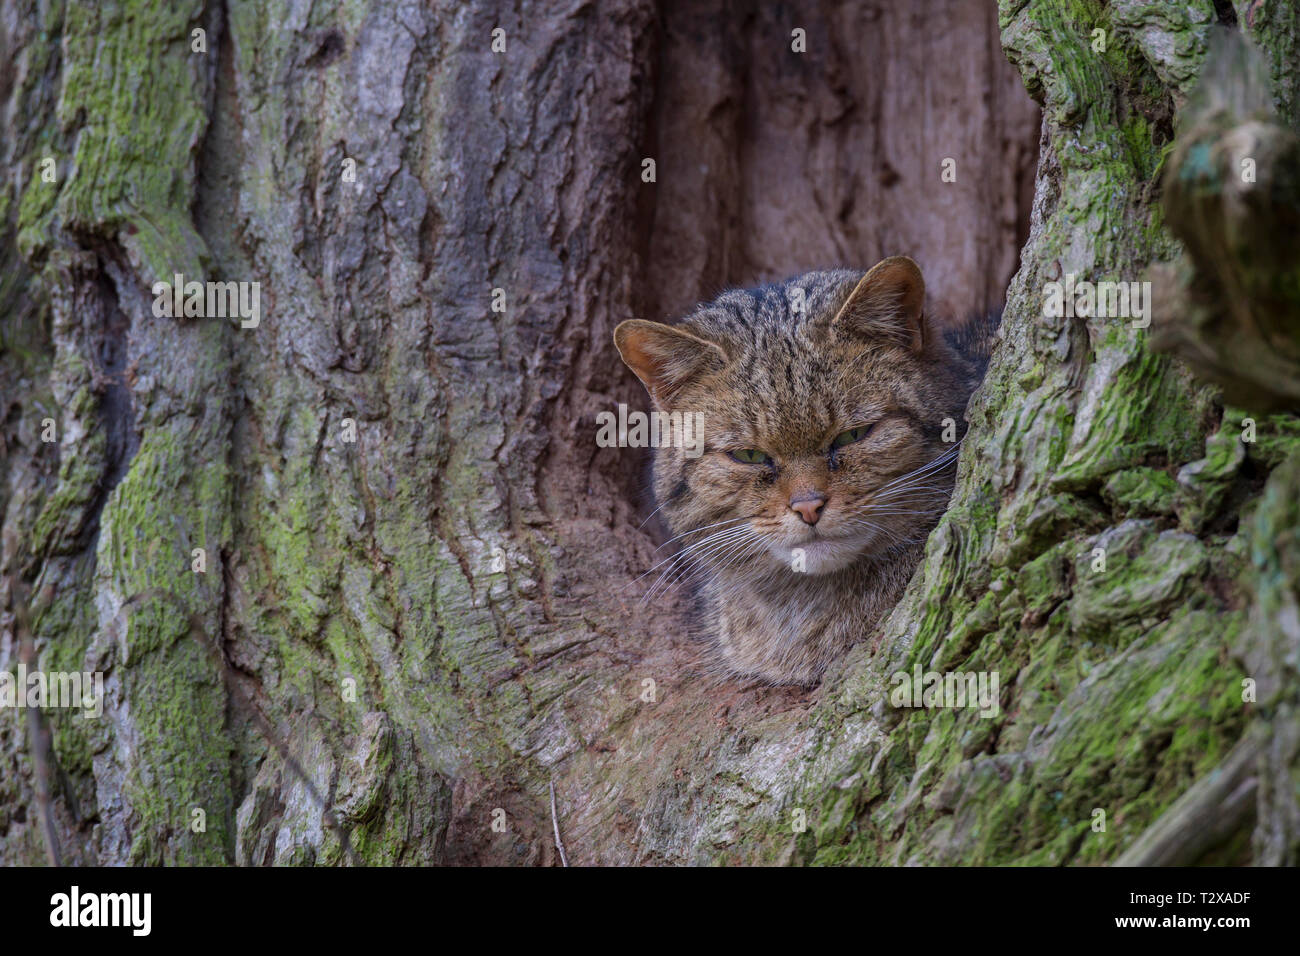 Wildkatze, Felis silvestris, wildcat Stock Photo